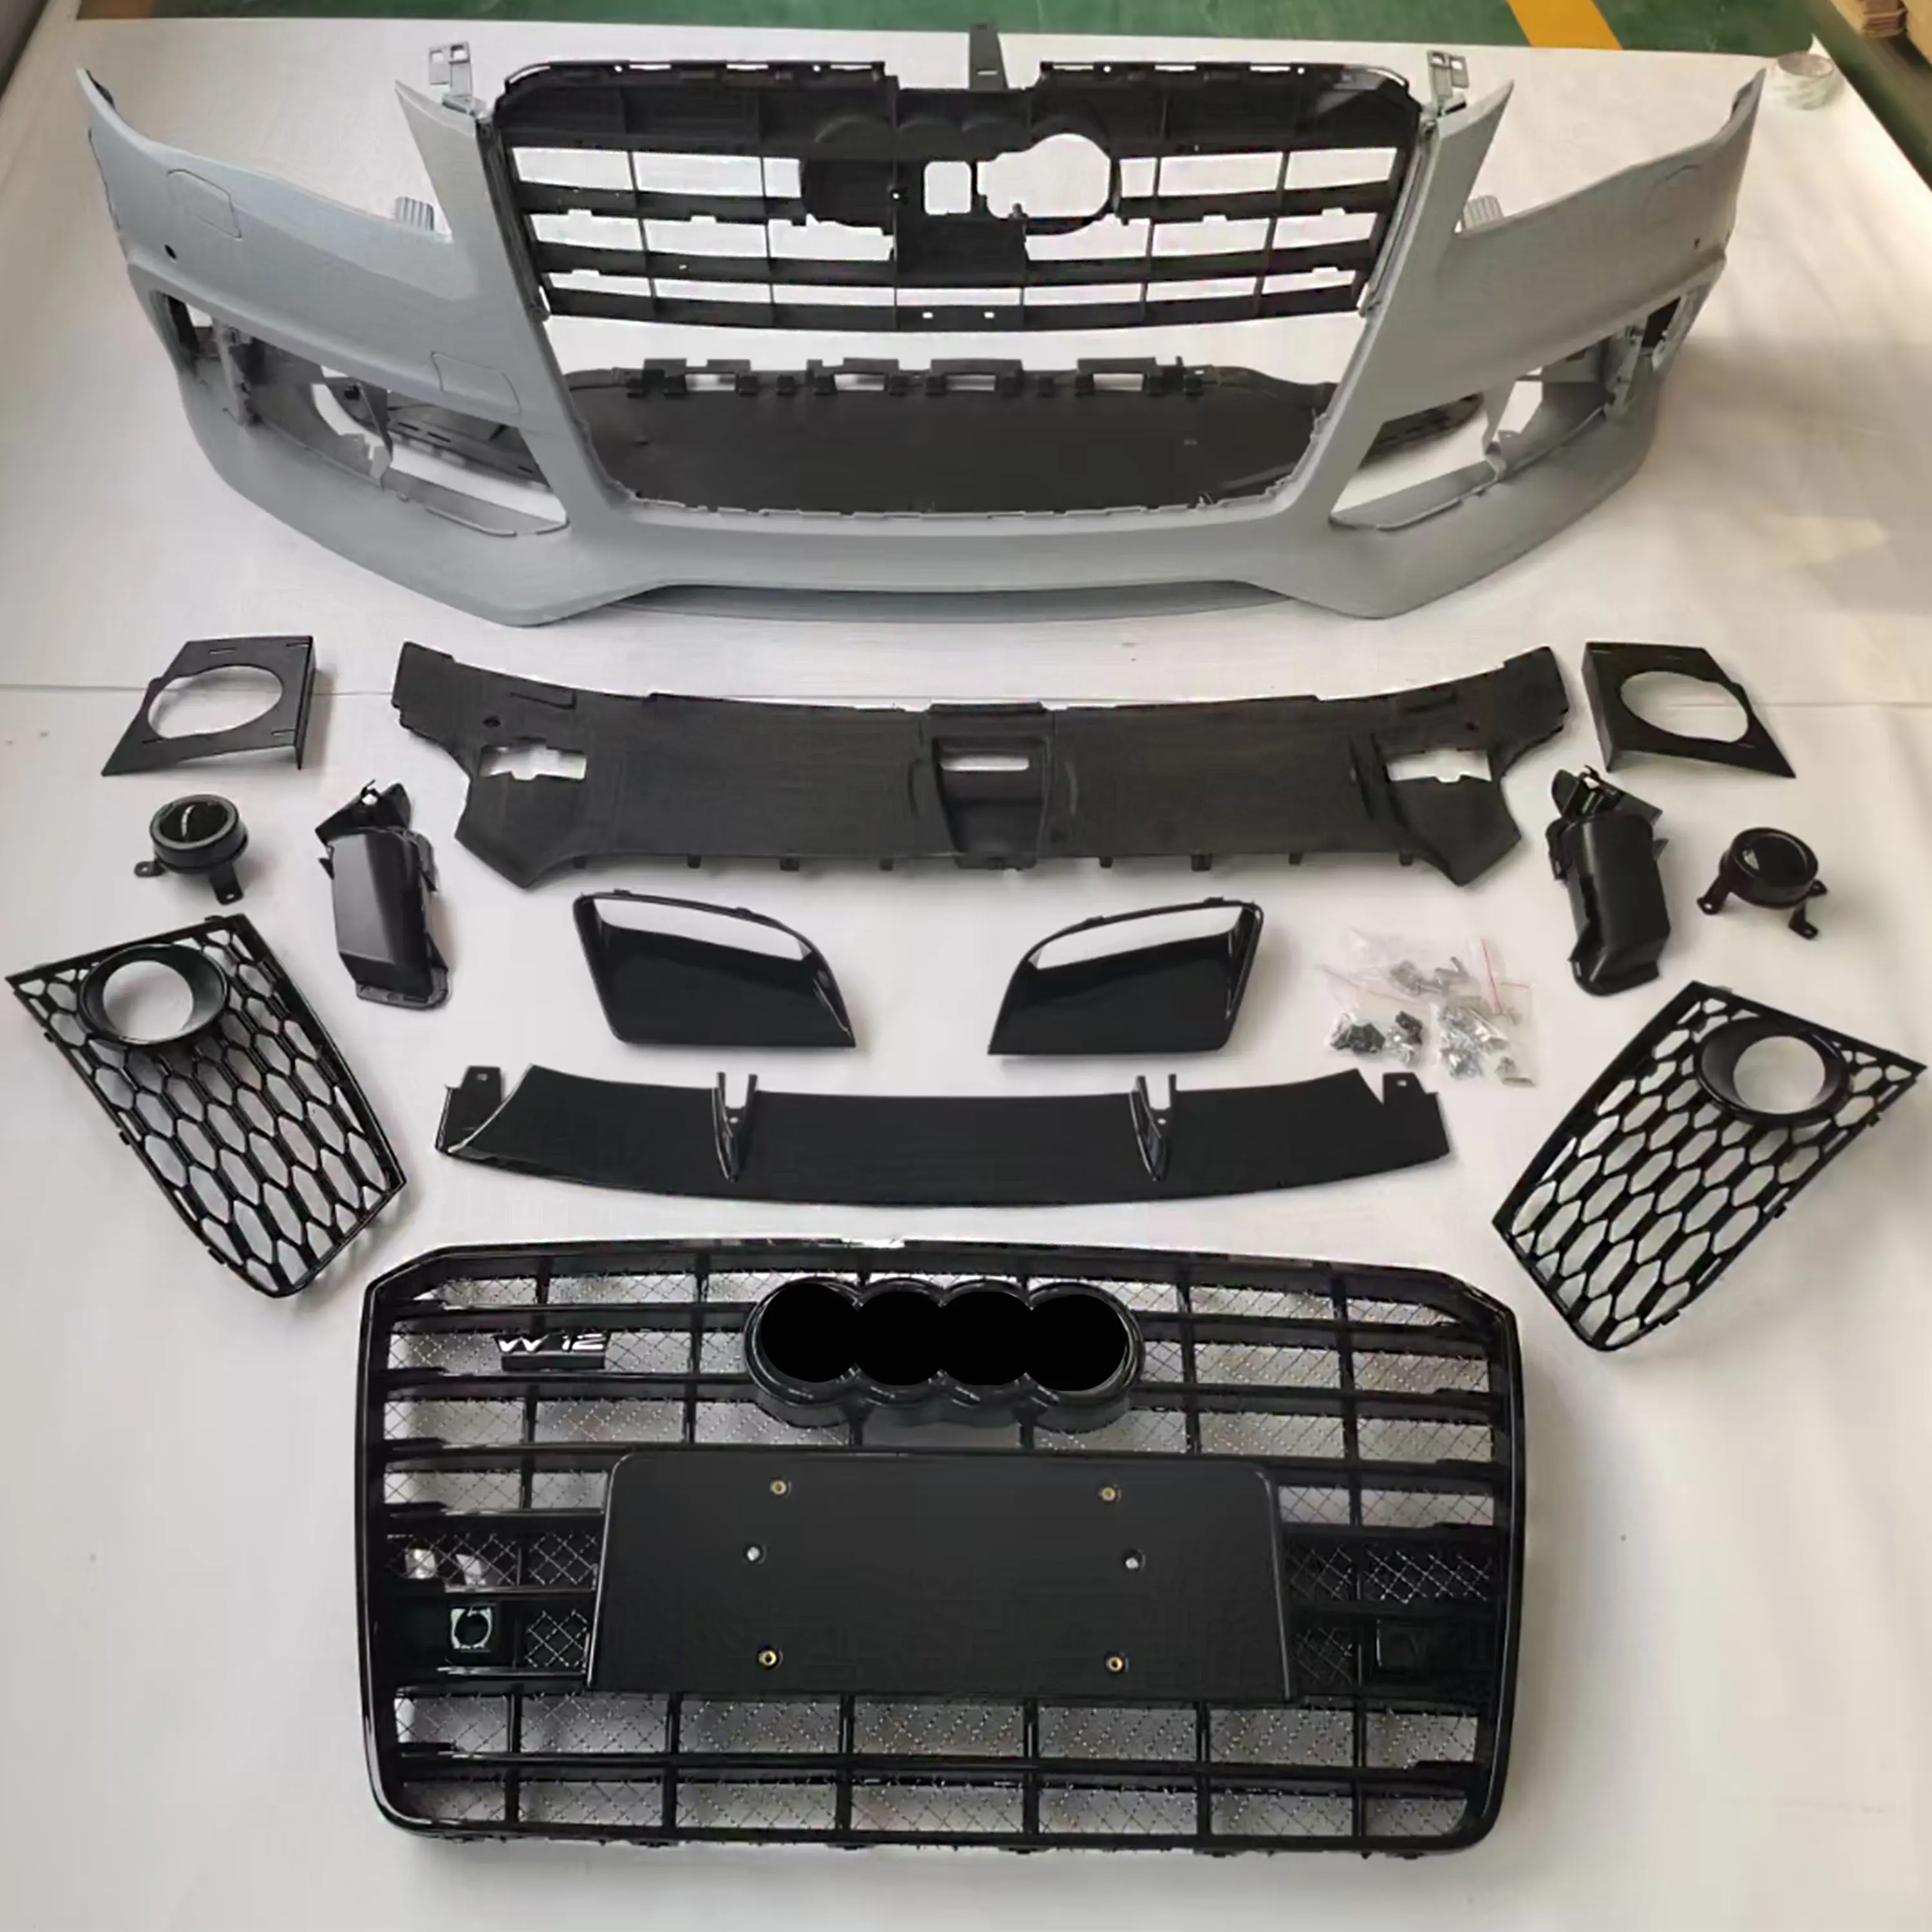 Auto Pp Phần Front Bumpers Với Lưới Tản Nhiệt Cho Audi D4 A8 A8L Facelift S8 Rs8 Phong Cách Lưới Grill Body Kits 2011-2017